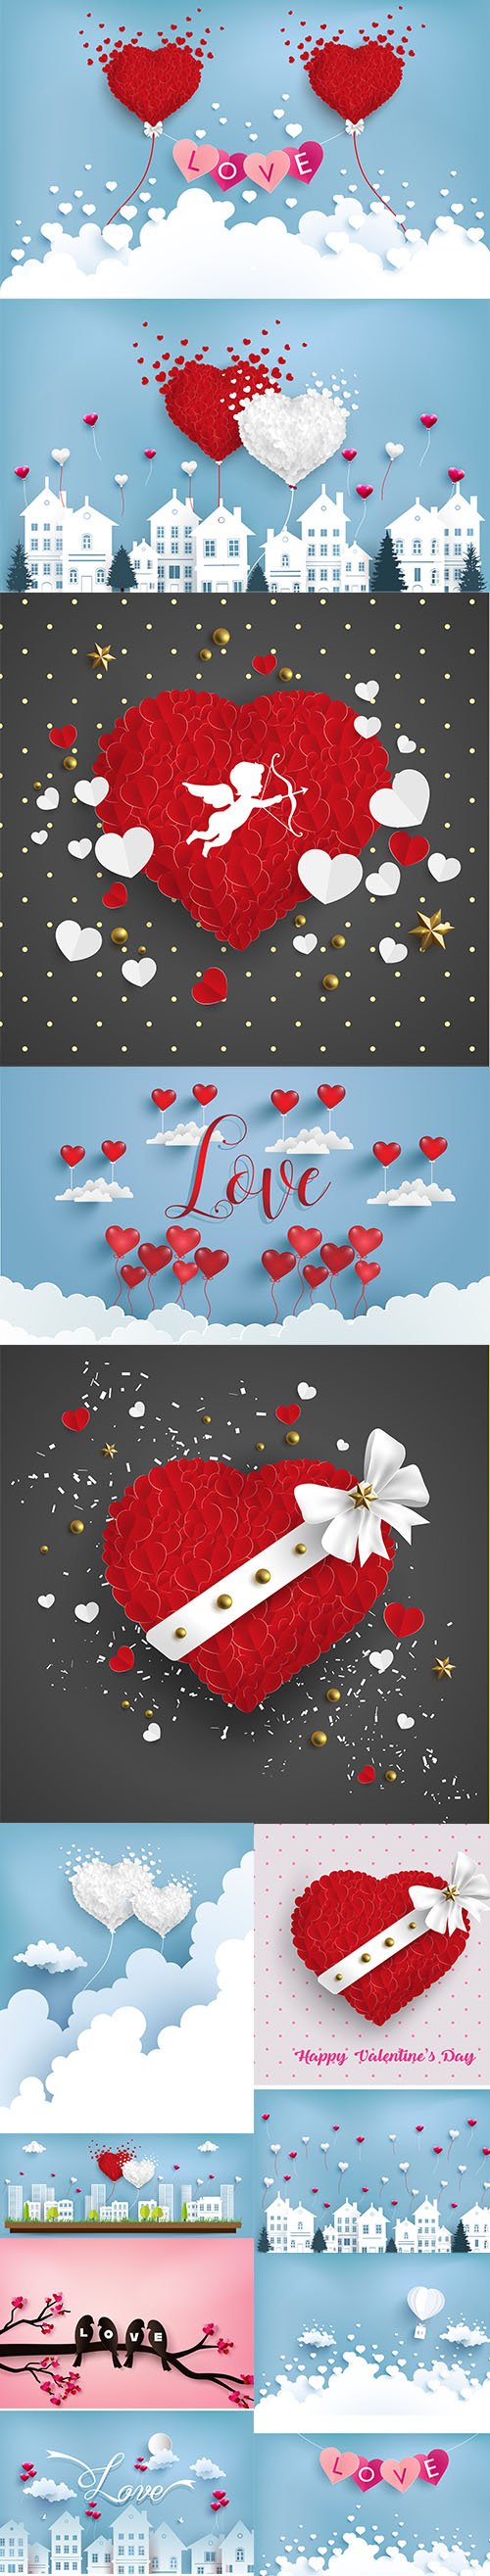 Happy Valentine's Day illustration set Vol 11